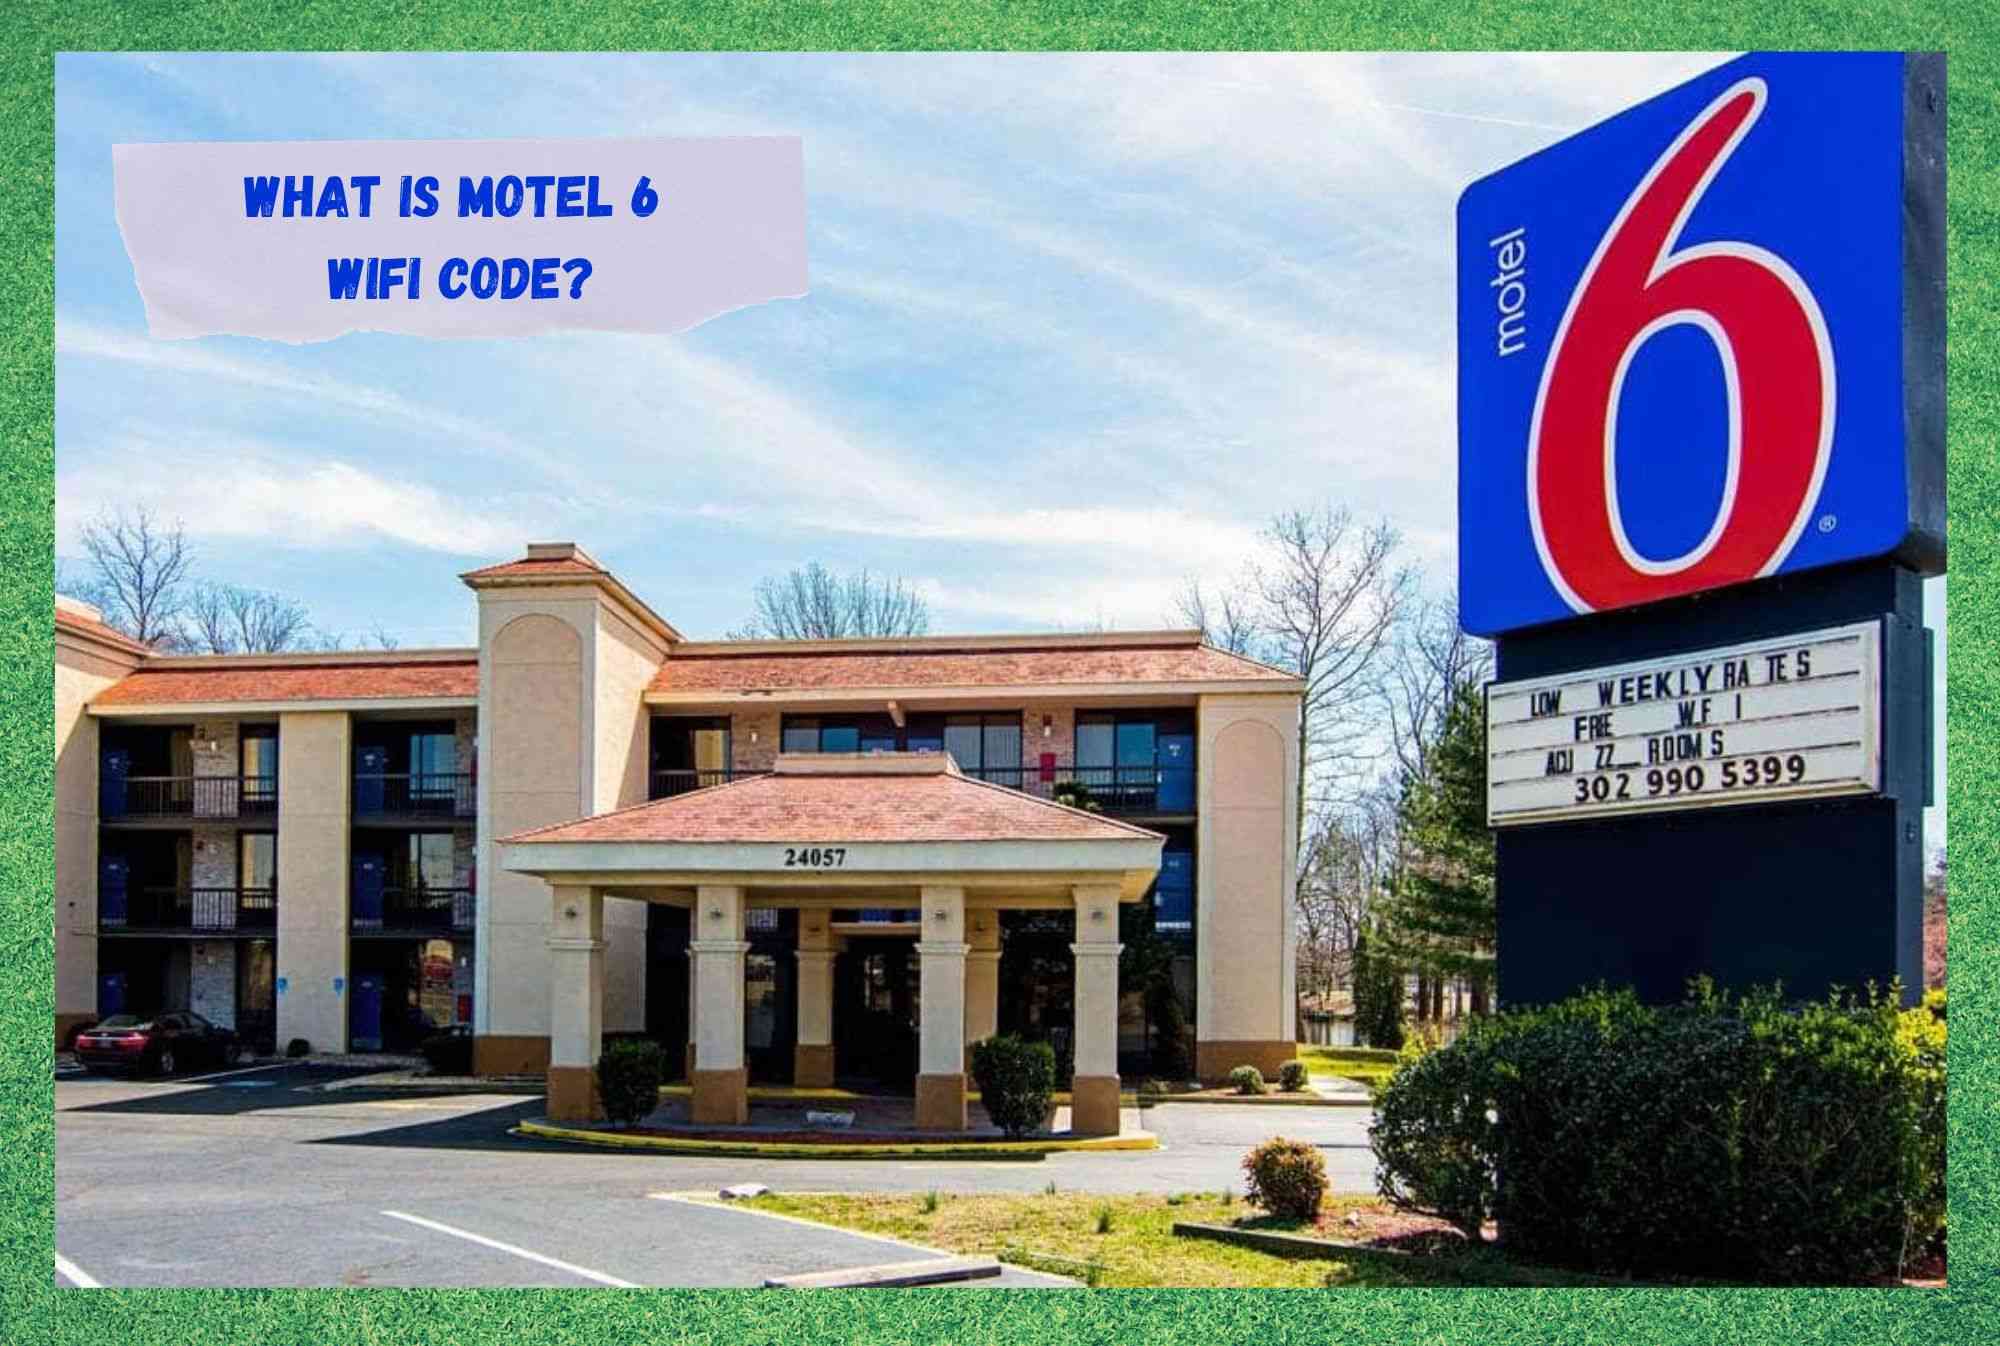 کد وای فای Motel 6 چیست؟